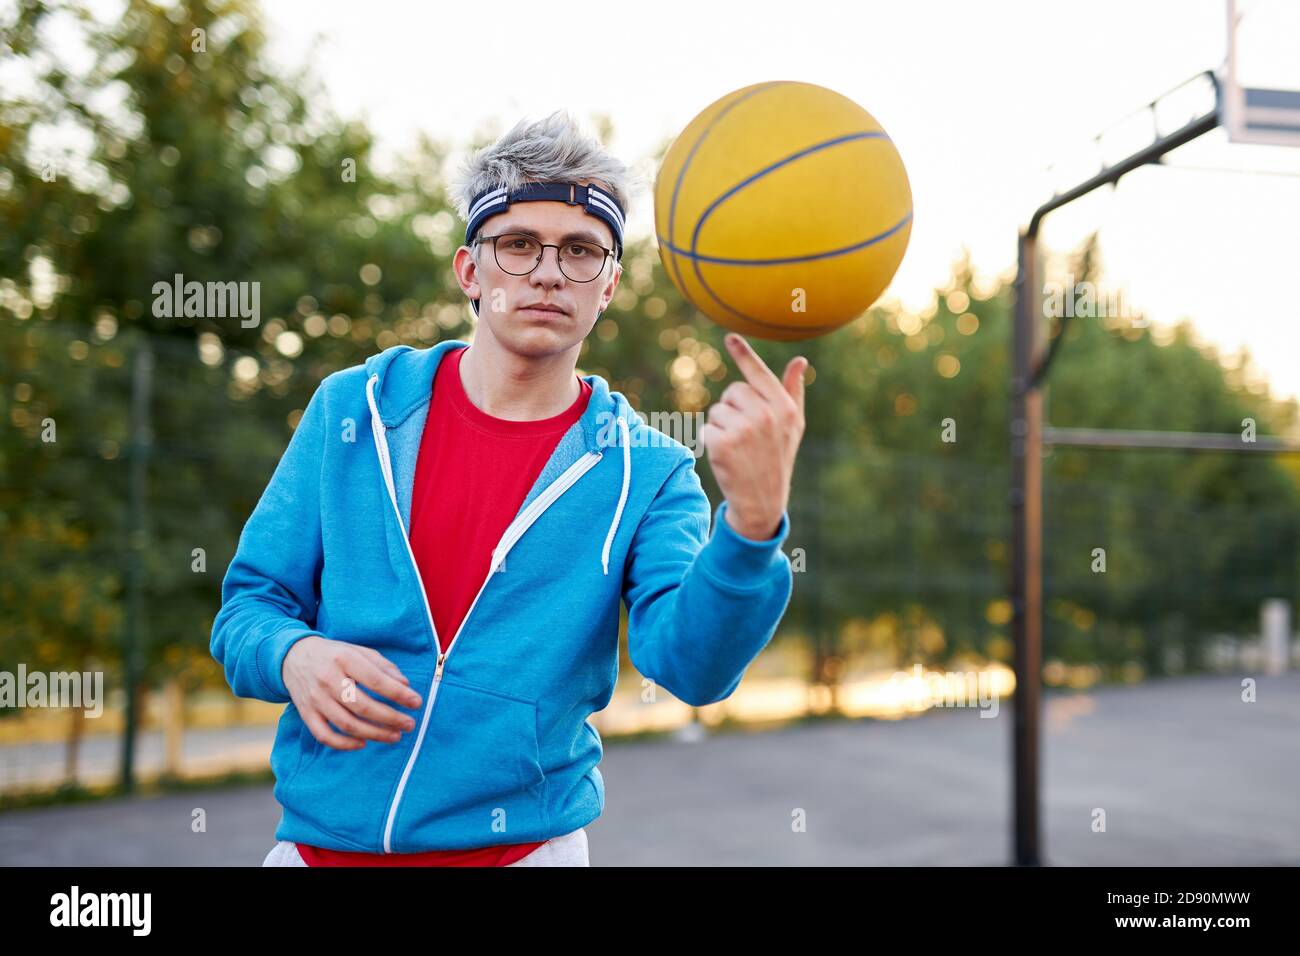 le hobby du jeune garçon est le basket-ball, homme moderne en tenue  sportive décontractée se préparant à la compétition Photo Stock - Alamy